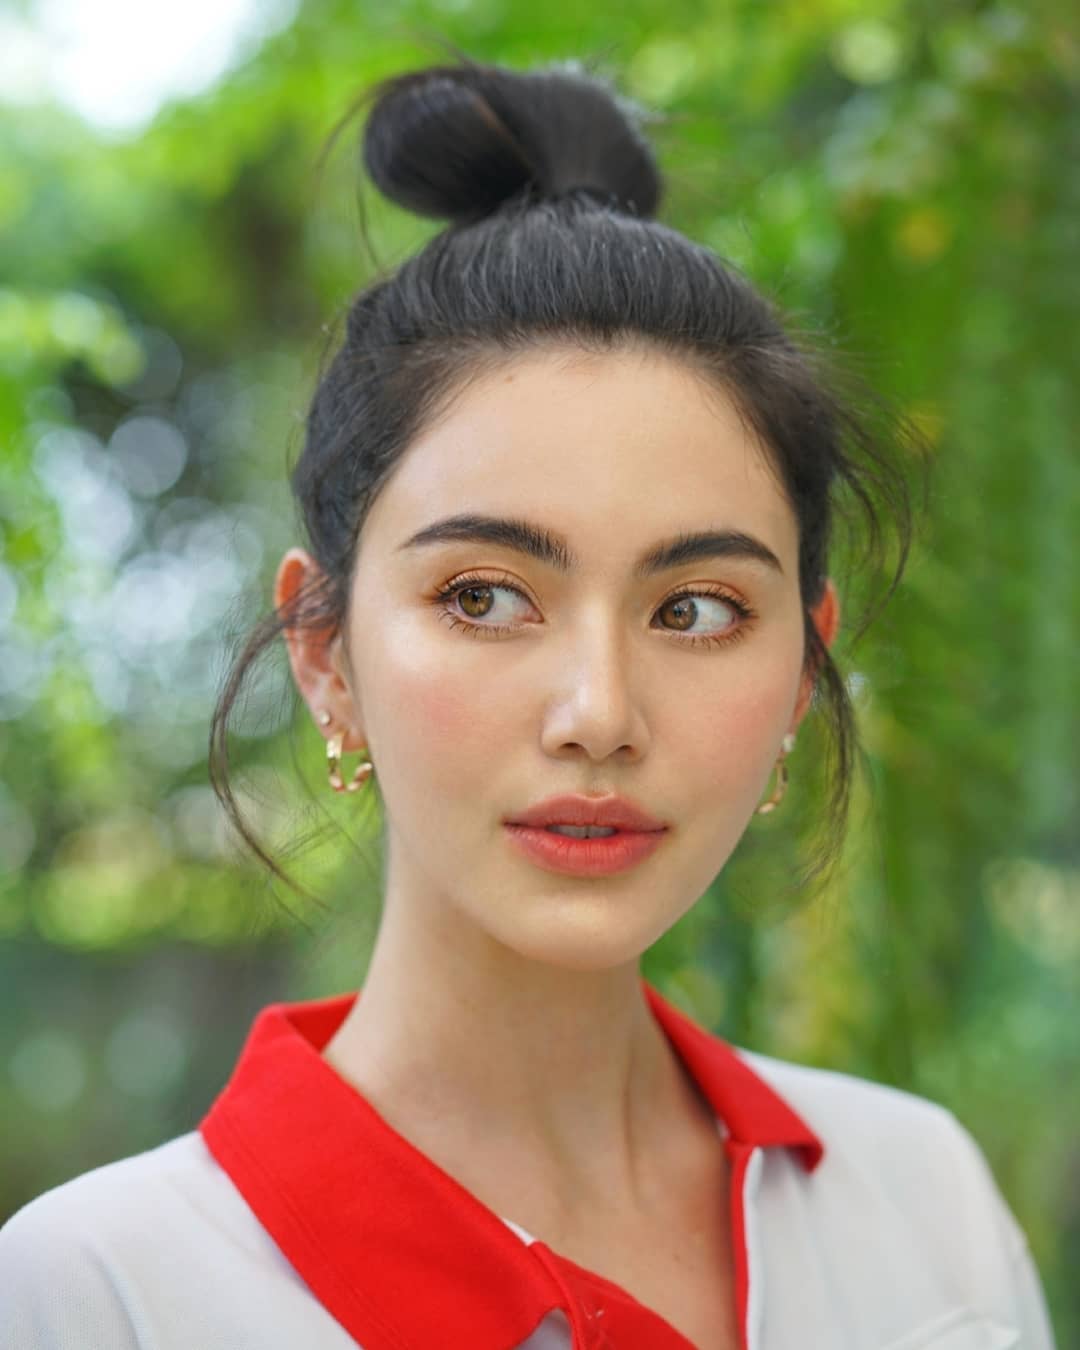 6 kiểu tóc tuyệt xinh của các mỹ nhân Thái chẳng hề kém cạnh sao Hàn